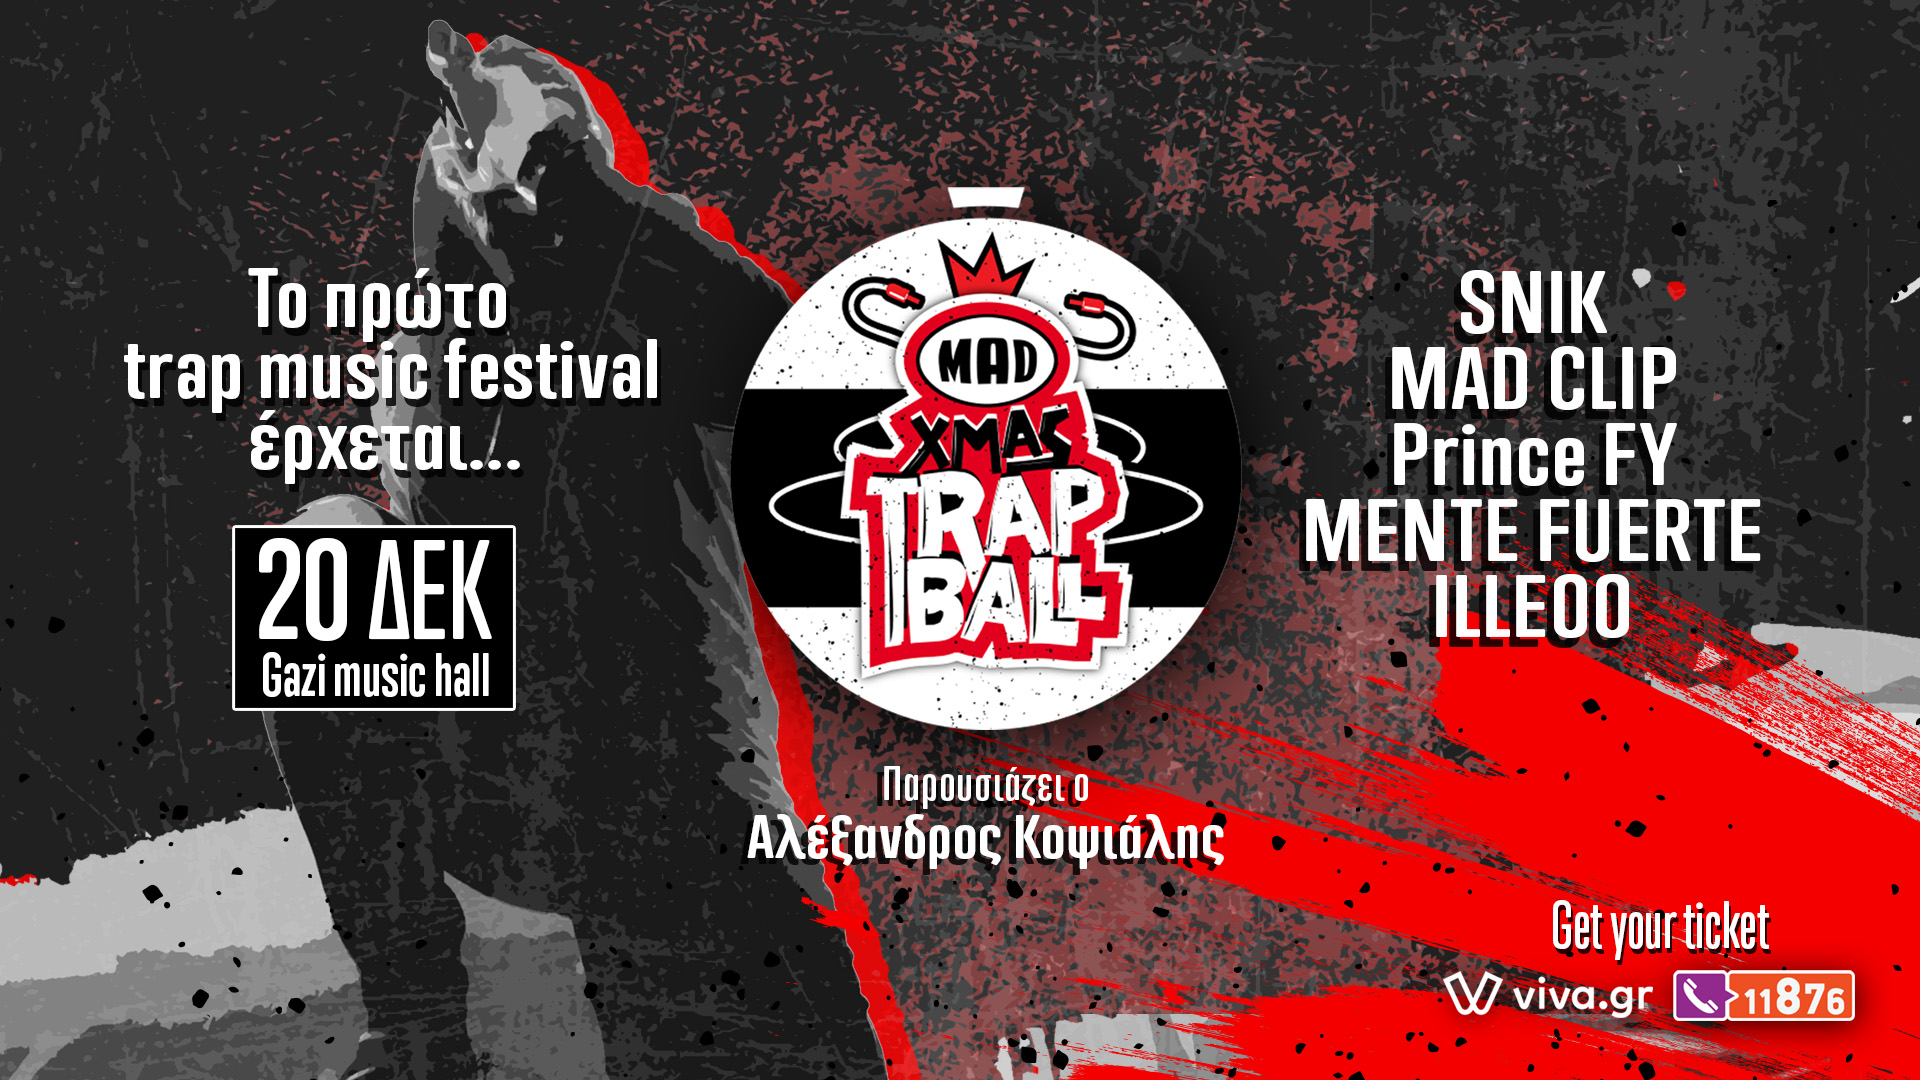 Ανακοινώθηκε το line up του πρώτου trap music festival